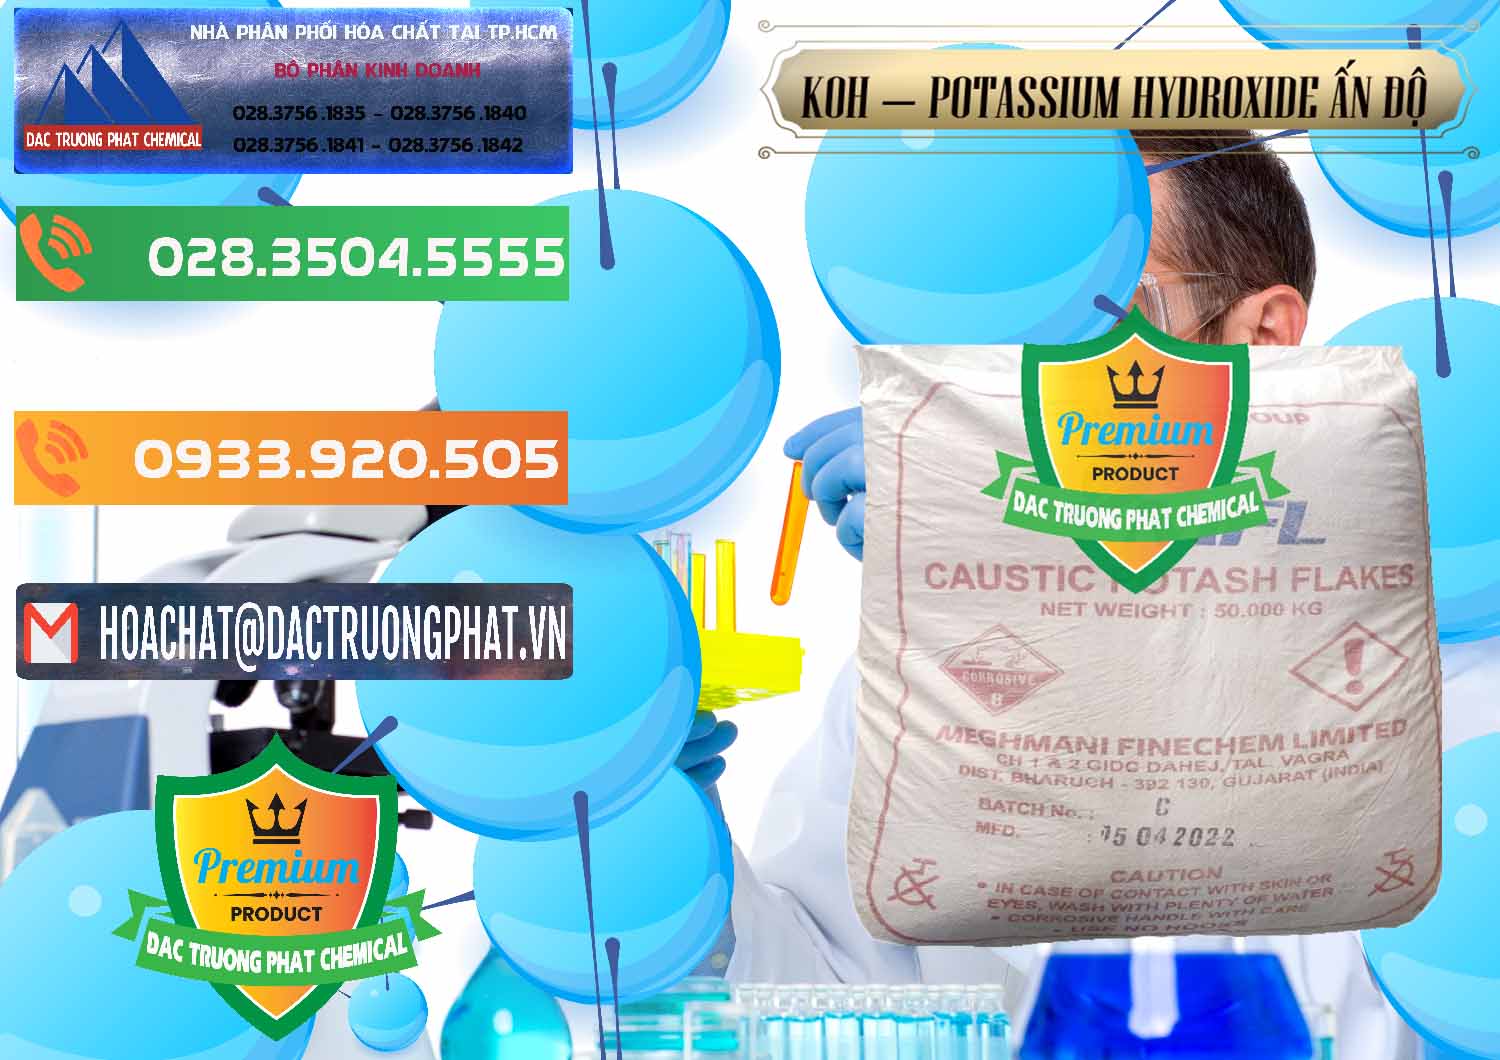 Cty kinh doanh - bán KOH ( 90%) – Potassium Hydroxide Ấn Độ India - 0352 - Chuyên nhập khẩu và cung cấp hóa chất tại TP.HCM - hoachatxulynuoc.com.vn